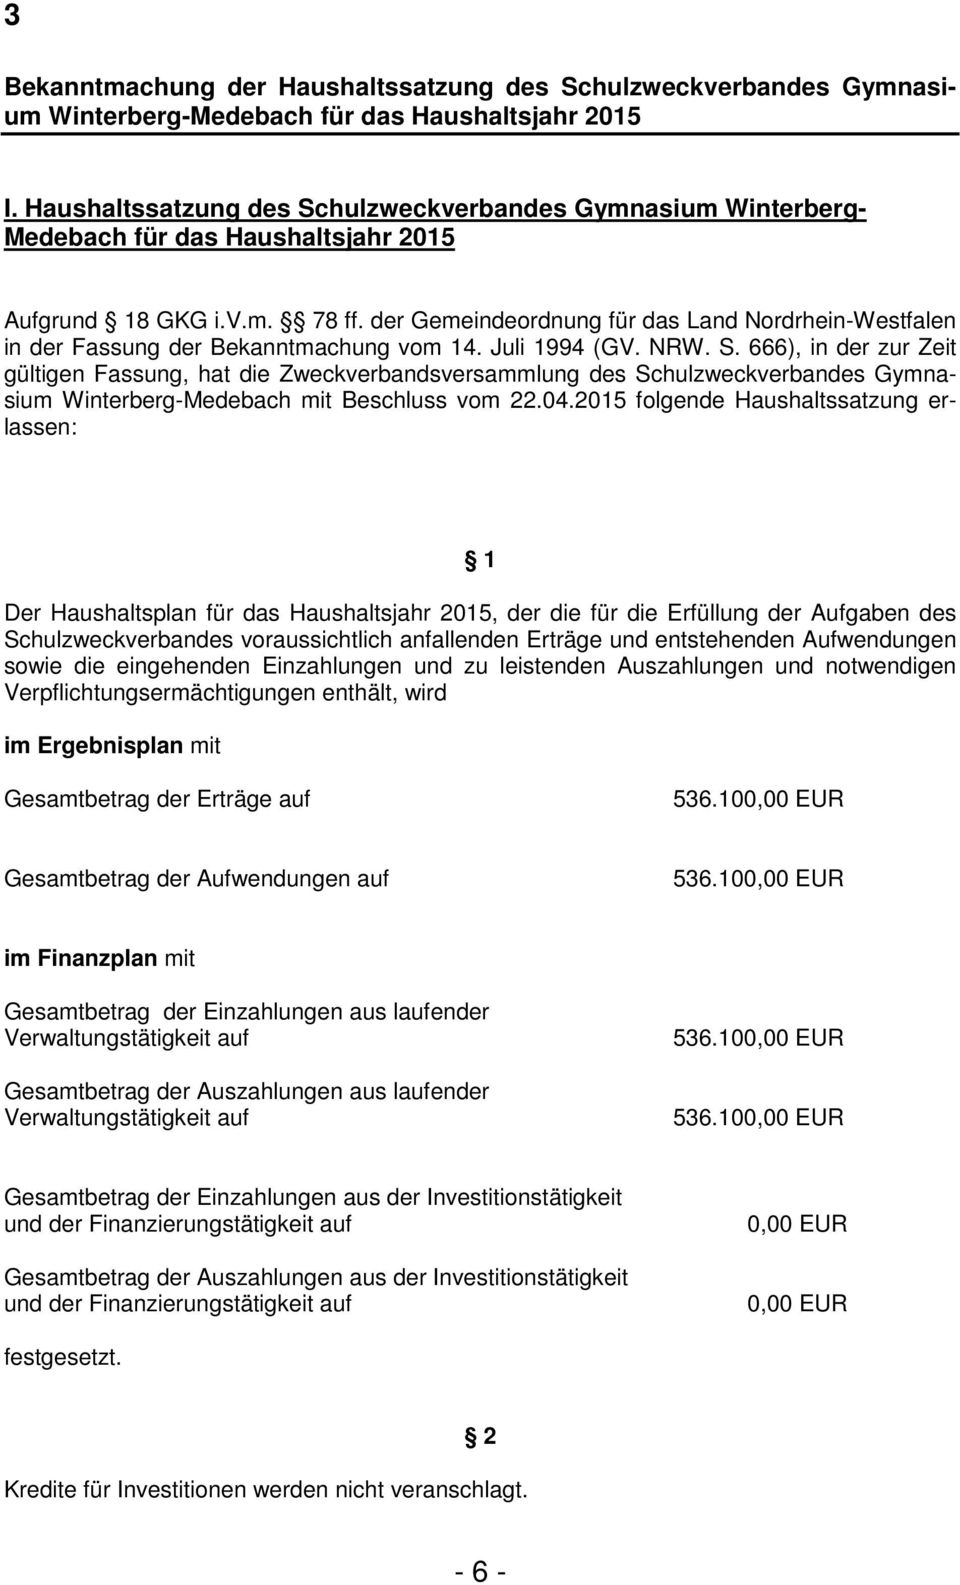 der Gemeindeordnung für das Land Nordrhein-Westfalen in der Fassung der Bekanntmachung vom 14. Juli 1994 (GV. NRW. S.